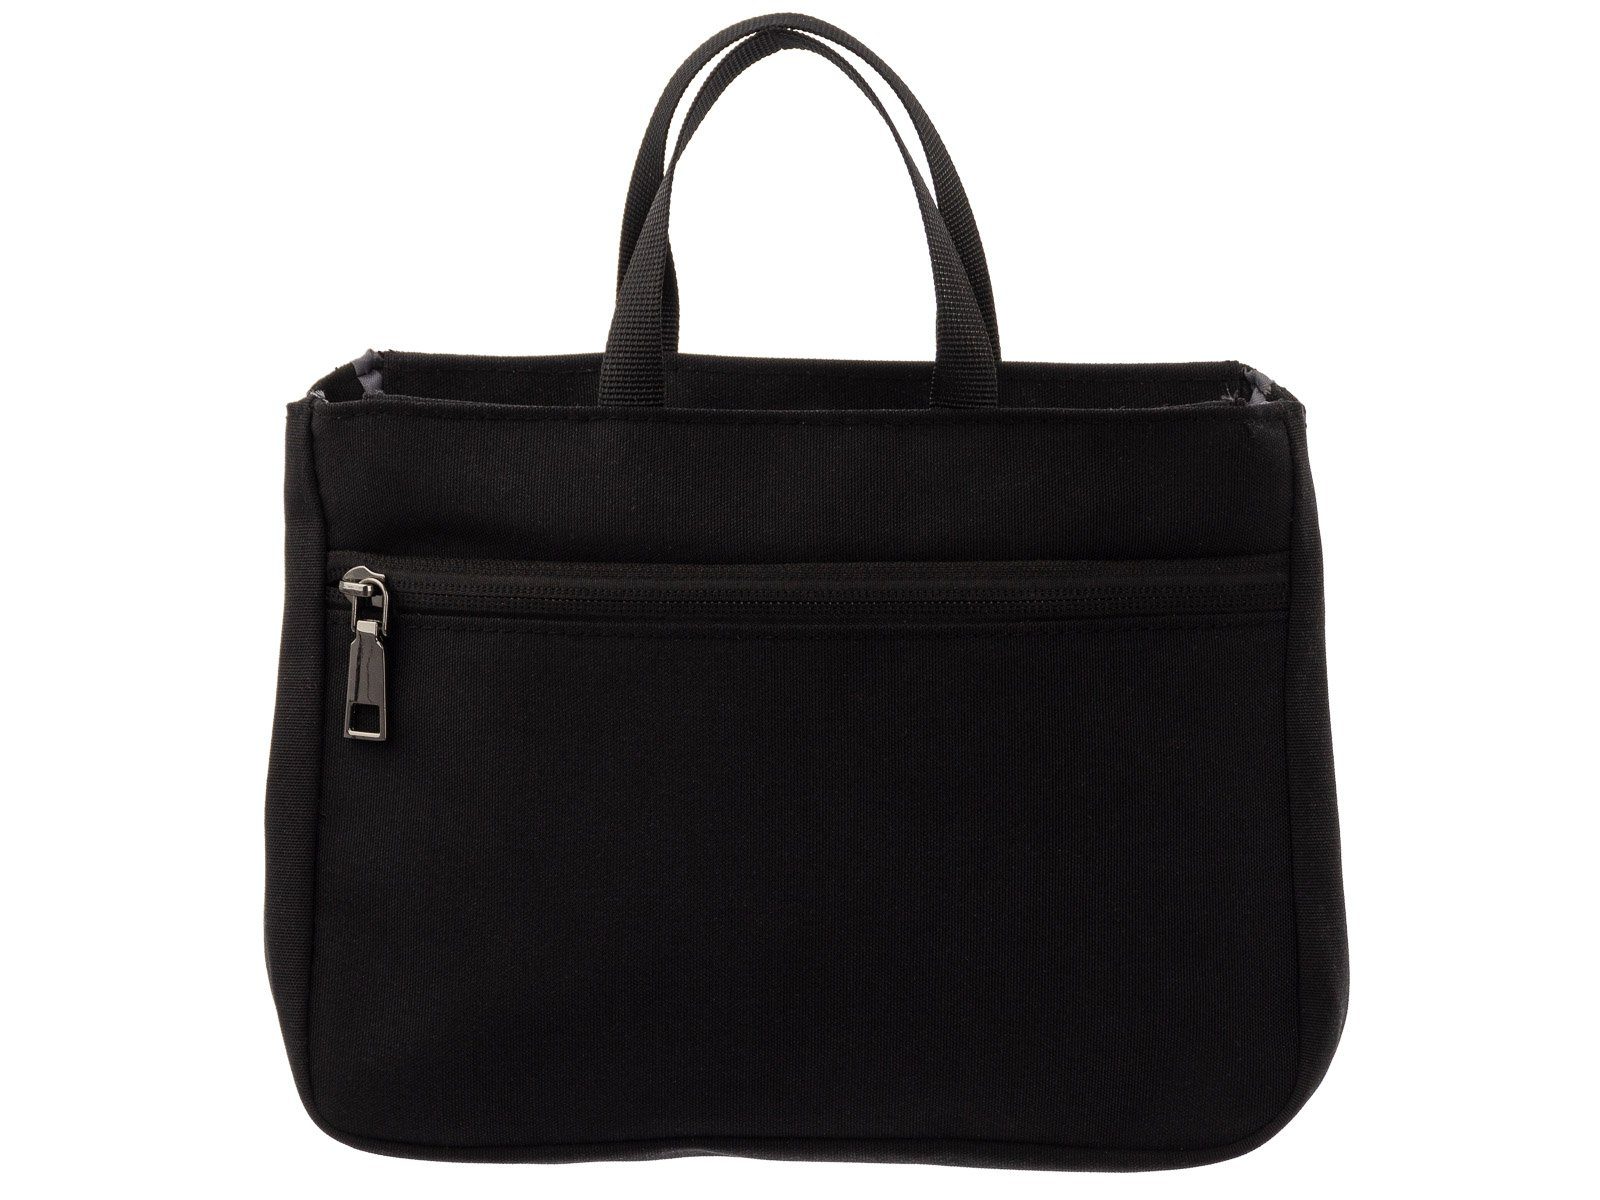 Bag Franky Packtasche, Bag schwarz Franky Organizer BO2 Kofferorganizer Taschen in